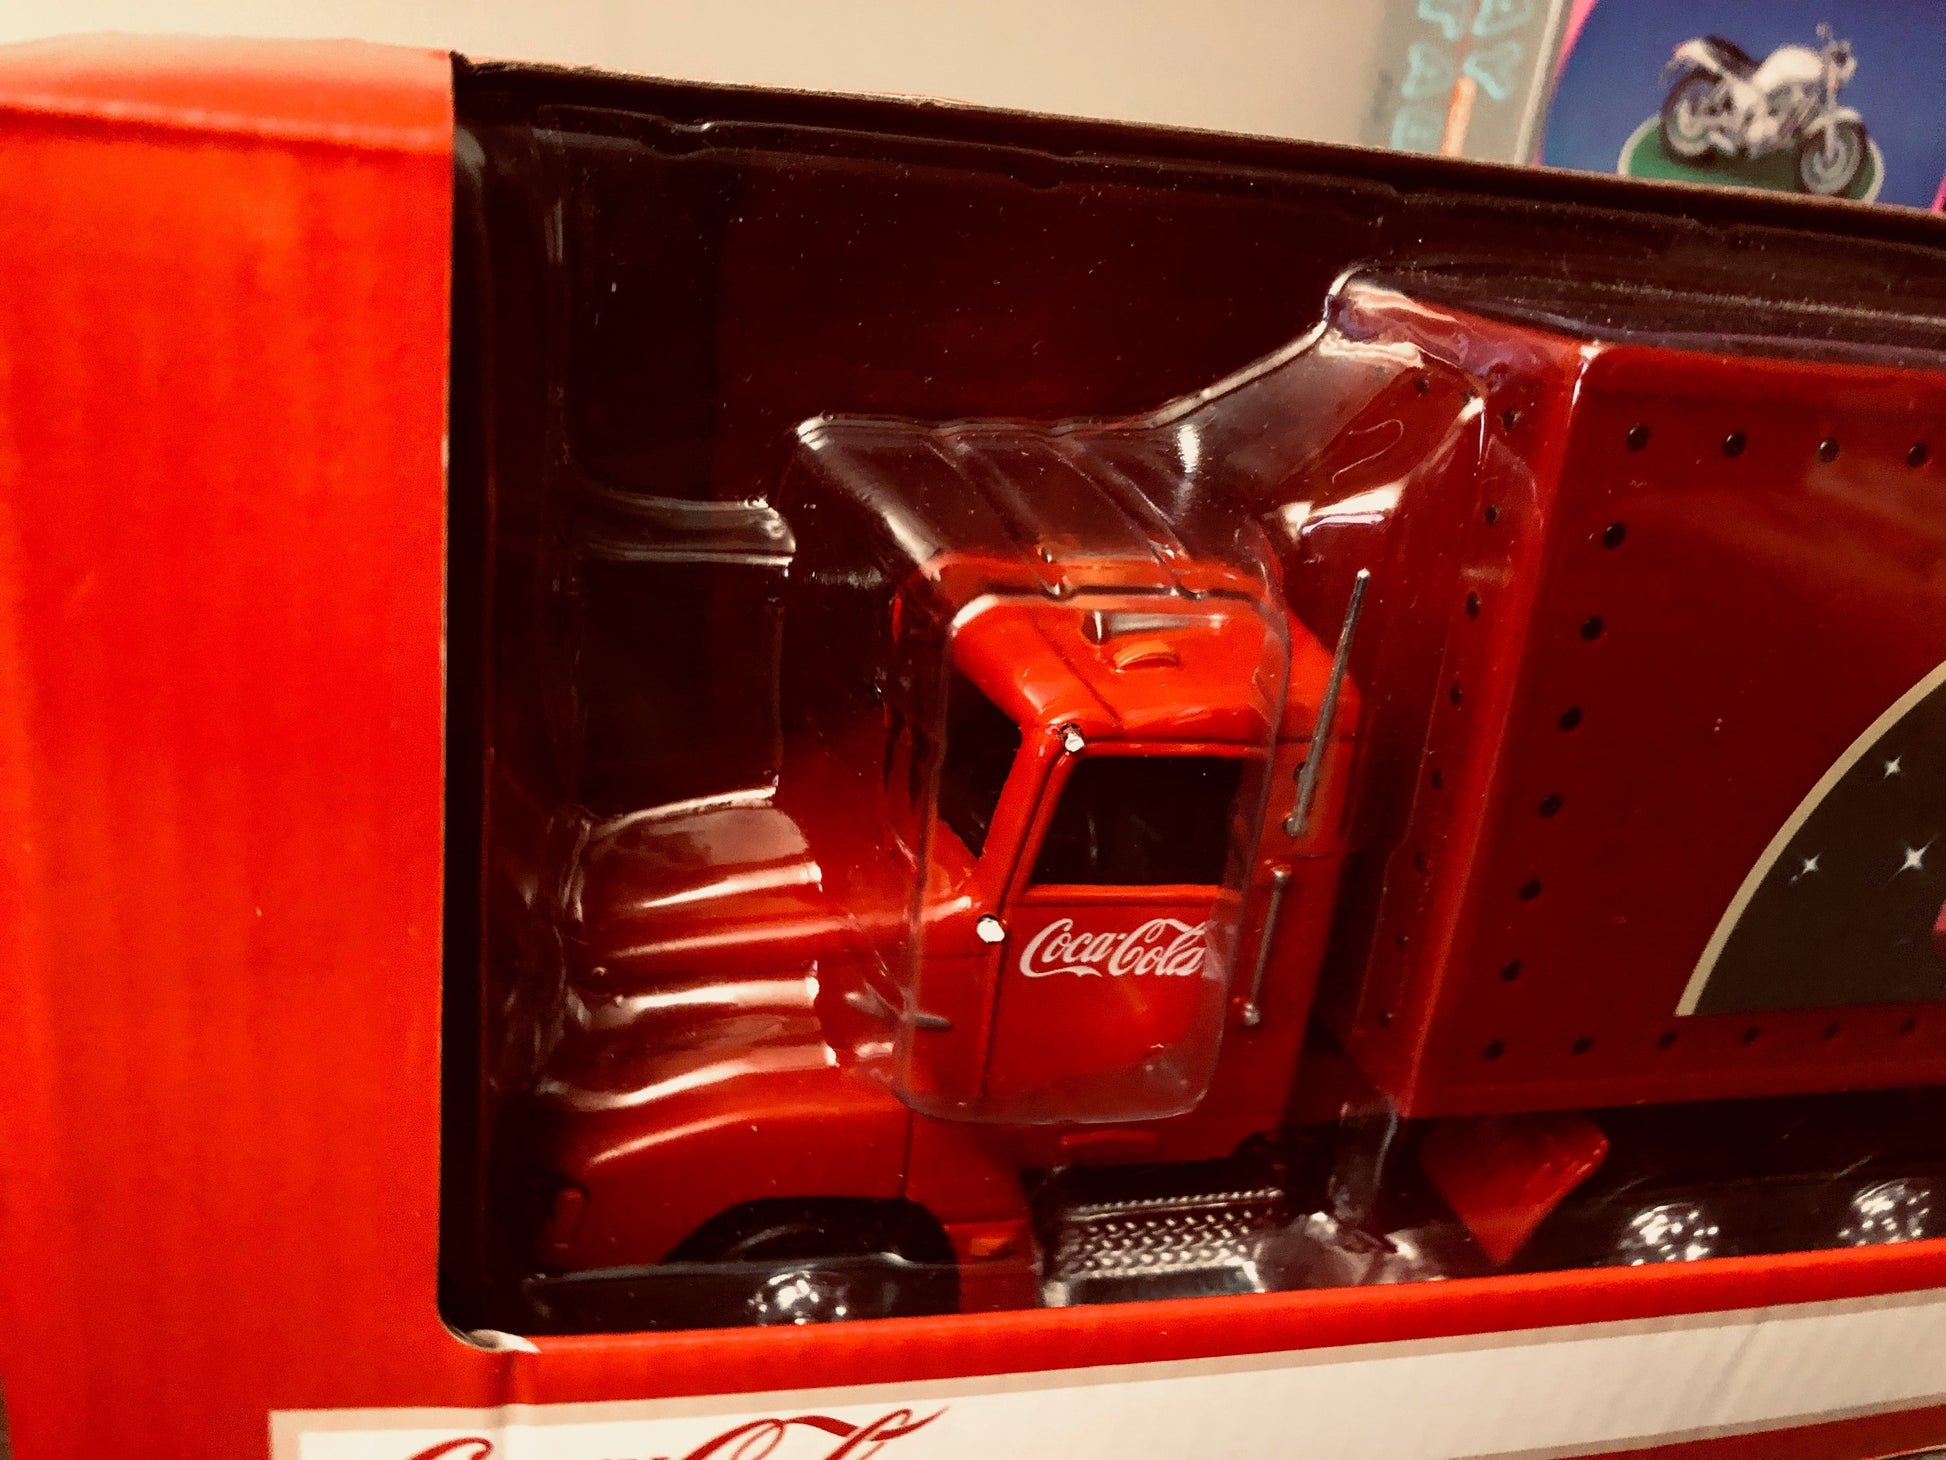  Motor City Coca-Cola - Holiday Caravan Tractor Trailer. (DISC)